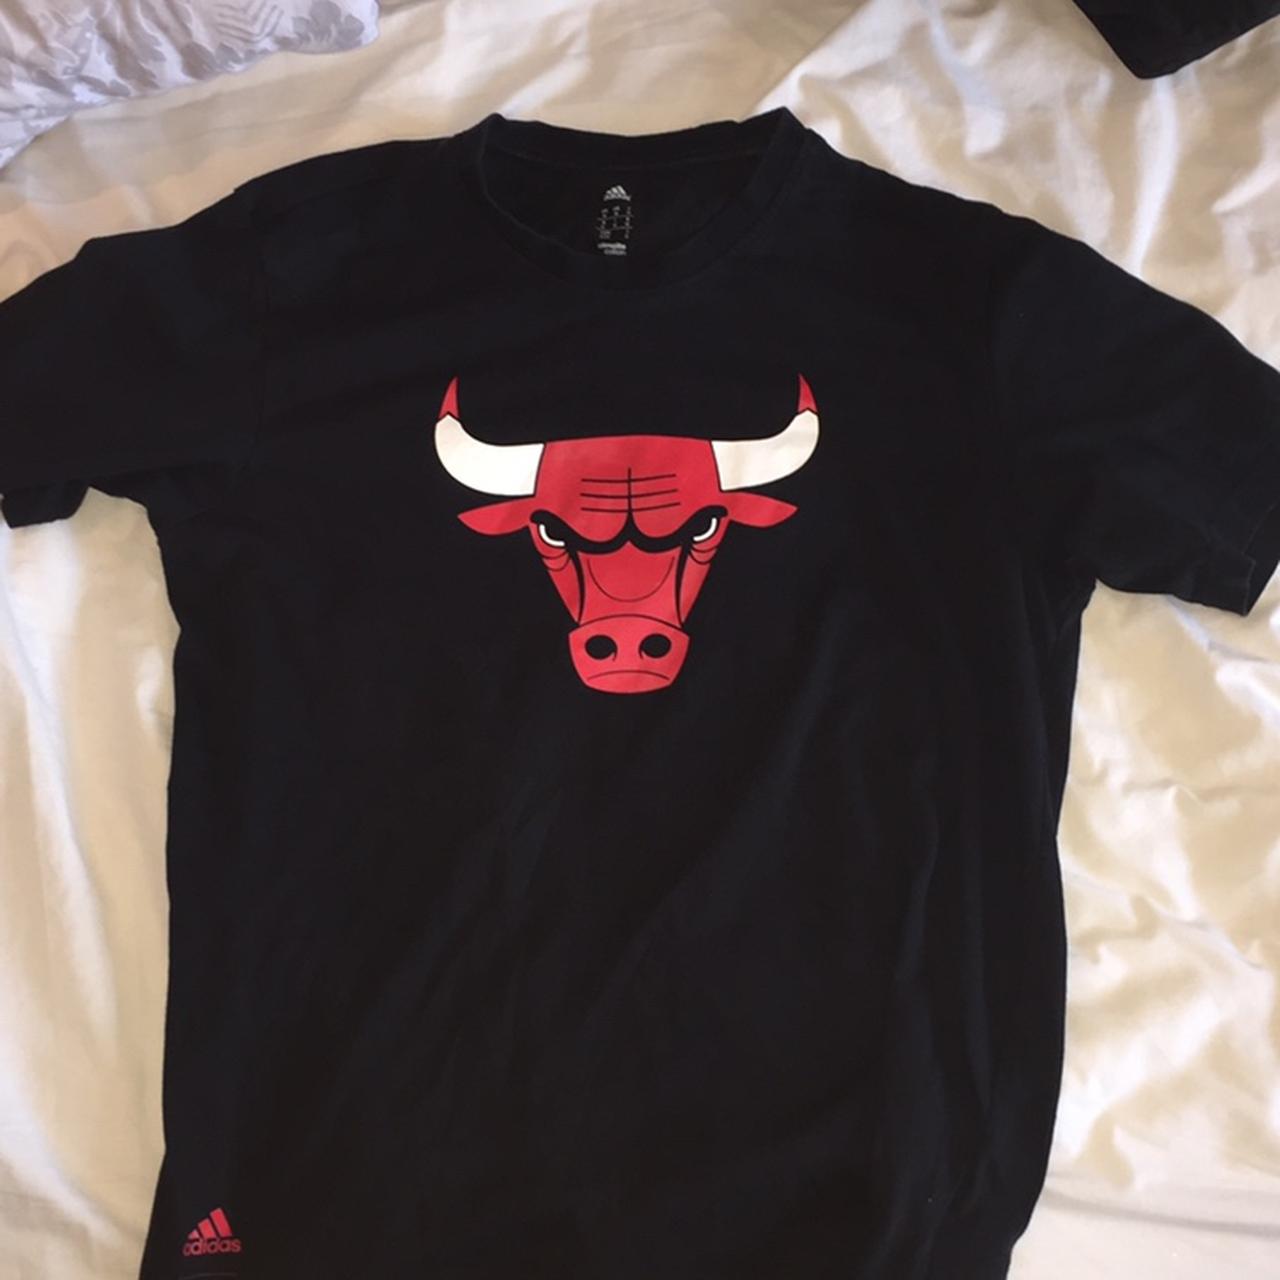 chicago bulls adidas shirt